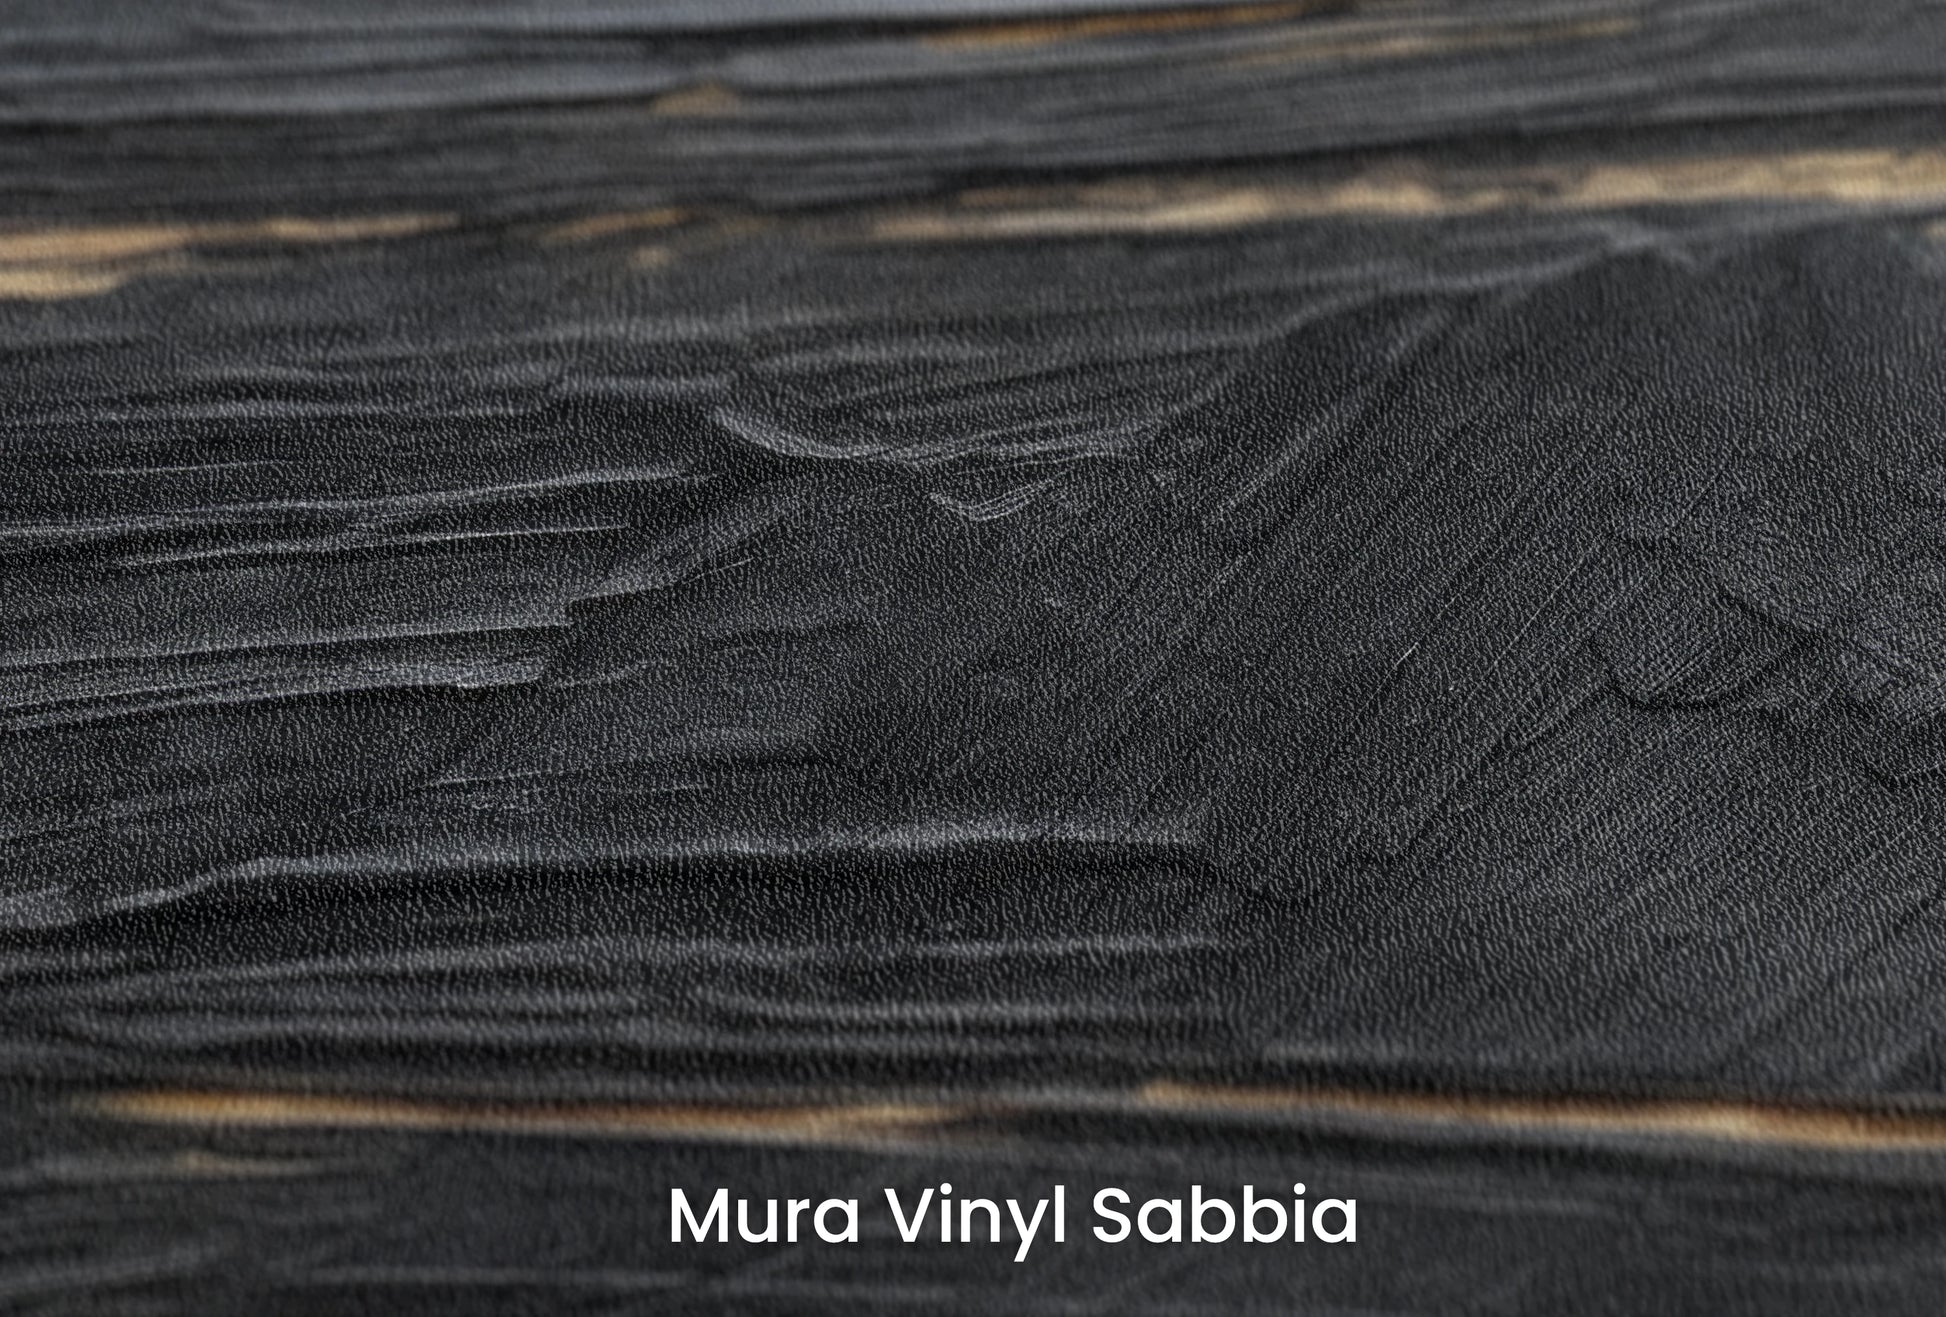 Zbliżenie na artystyczną fototapetę o nazwie Black Gold Elegance na podłożu Mura Vinyl Sabbia struktura grubego ziarna piasku.